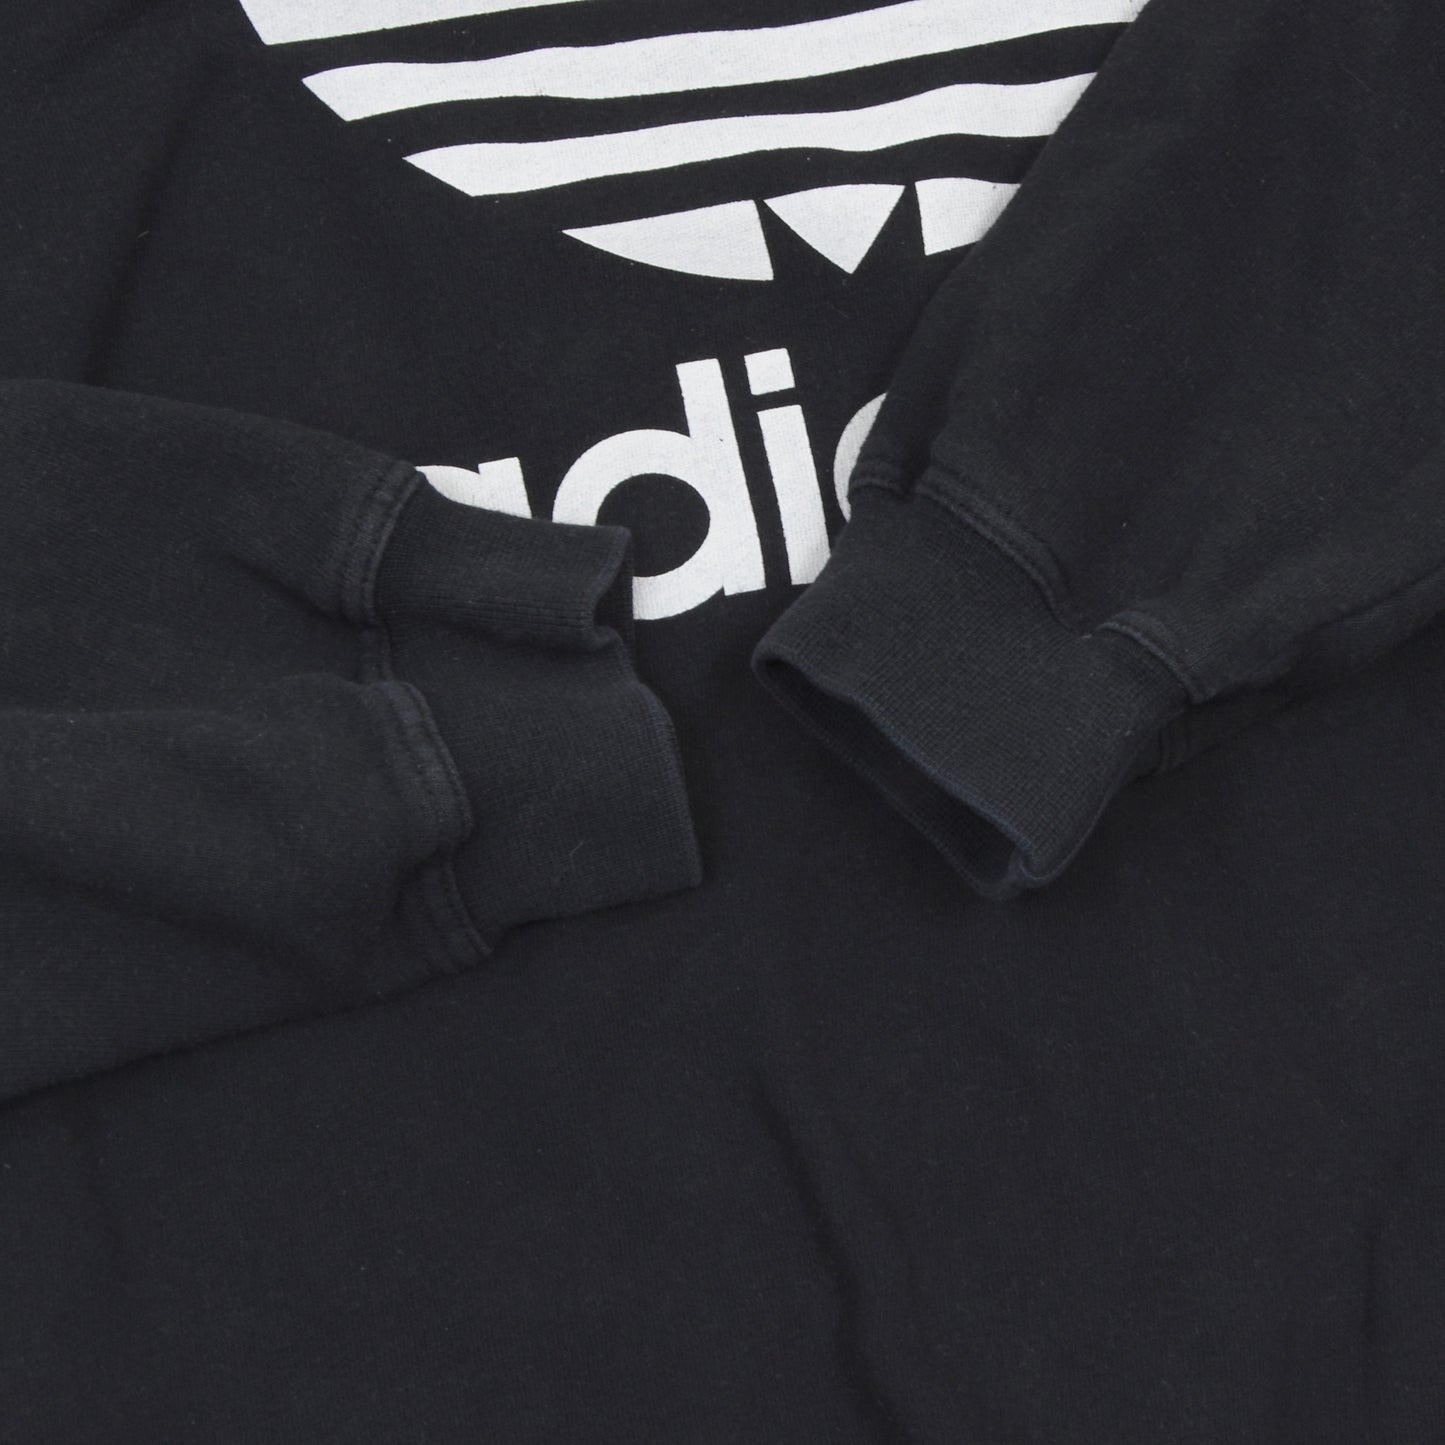 1990 Adidas Trefoil Sweatshirt Größe D7 - schwarz